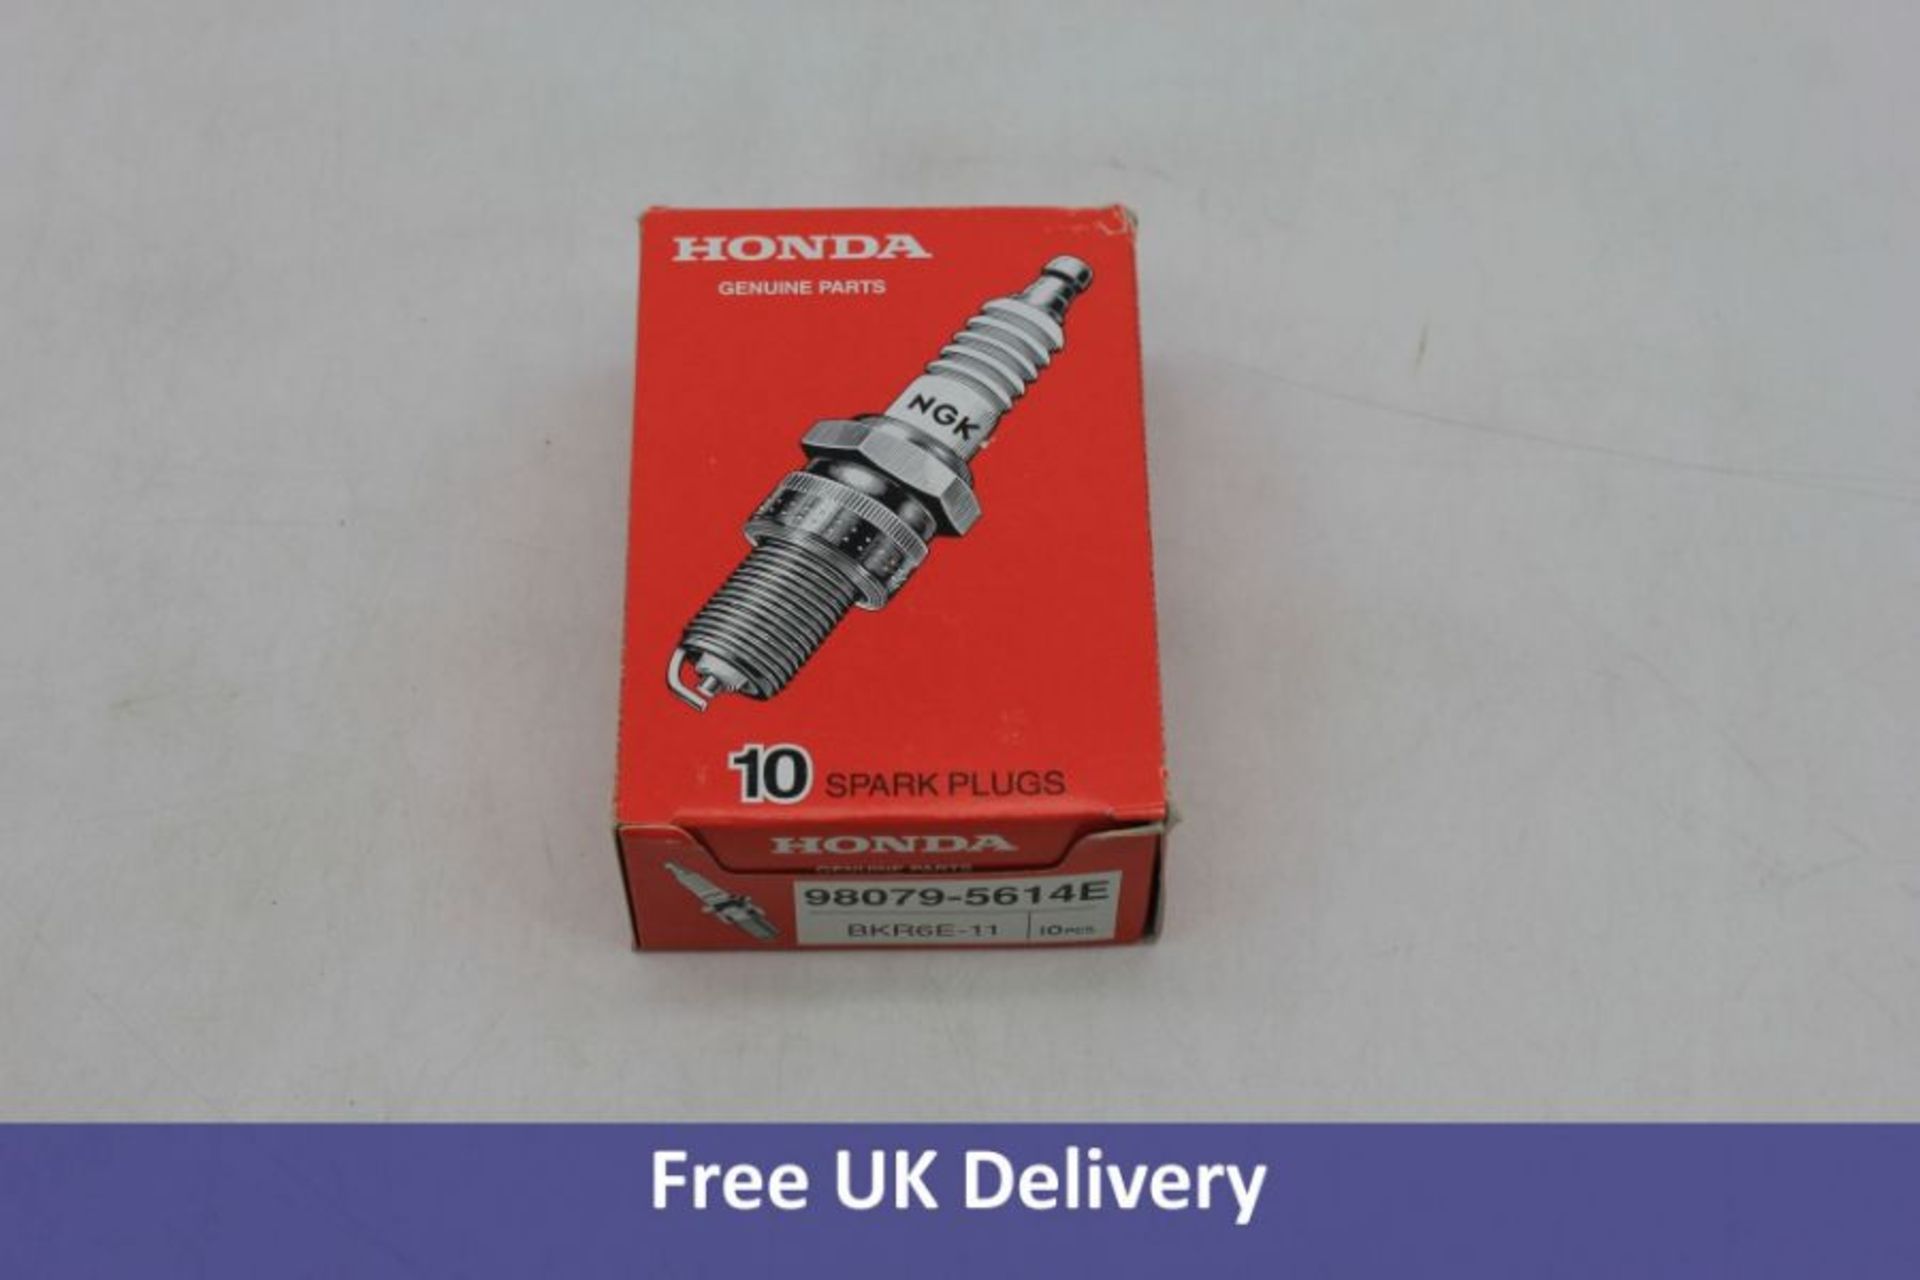 Two Packs of Honda Genuine Parts BKR6E-11 Spark Plug. 10 pieces per pack